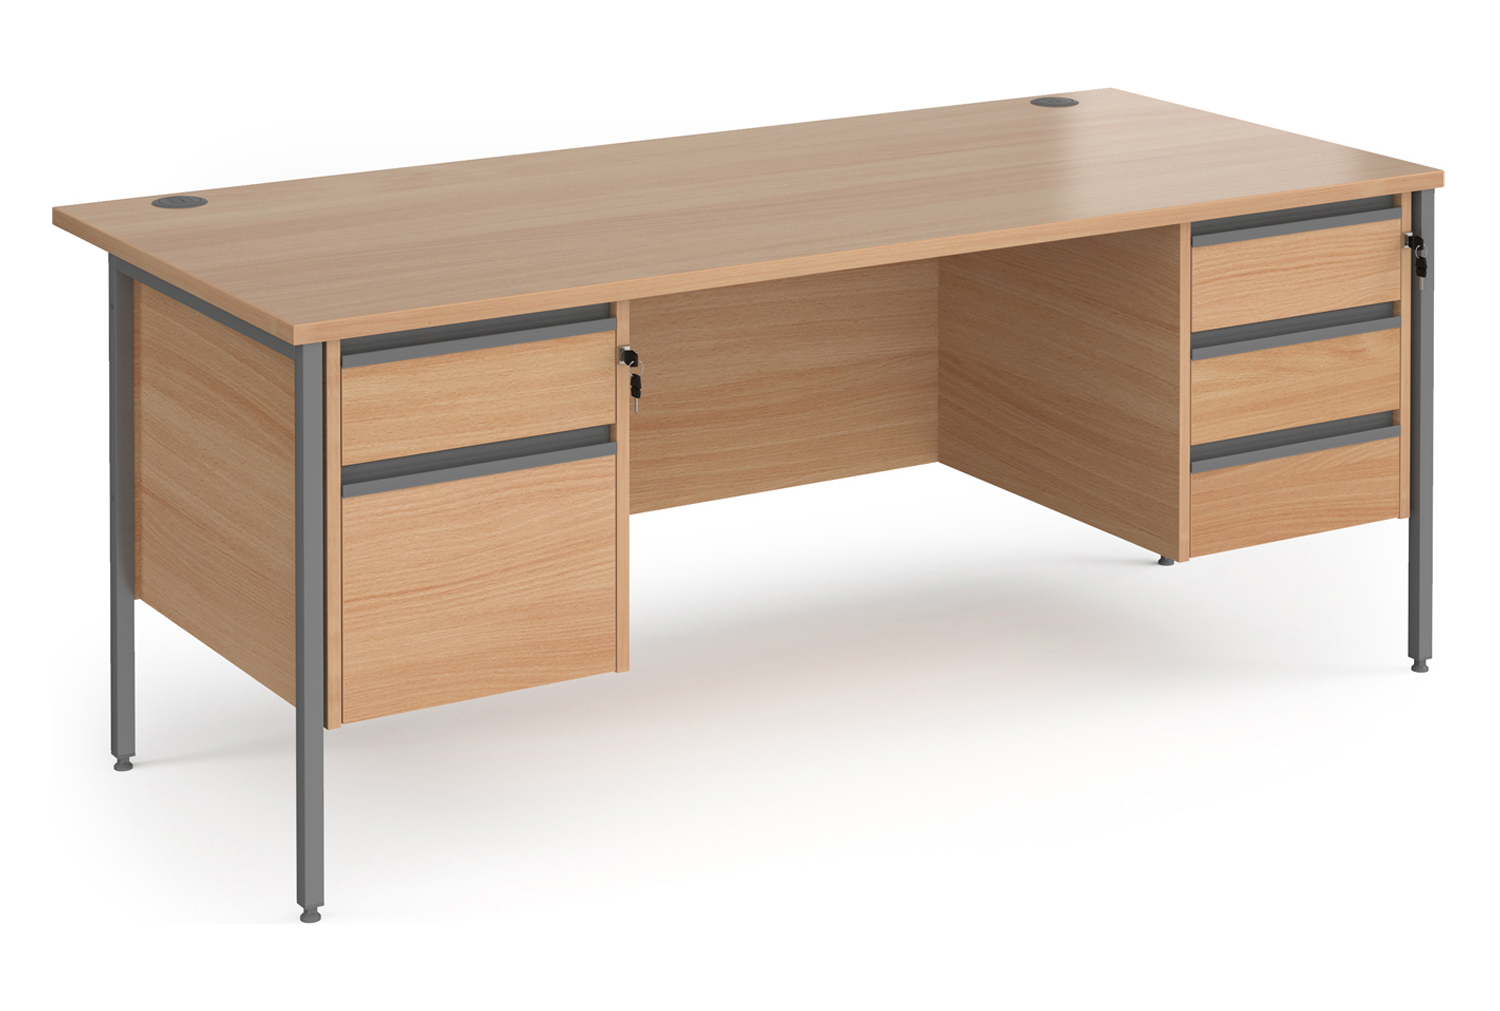 Value Line Classic+ Rectangular H-Leg Office Desk 2+3 Drawers (Graphite Leg), 180wx80dx73h (cm), Beech, Fully Installed